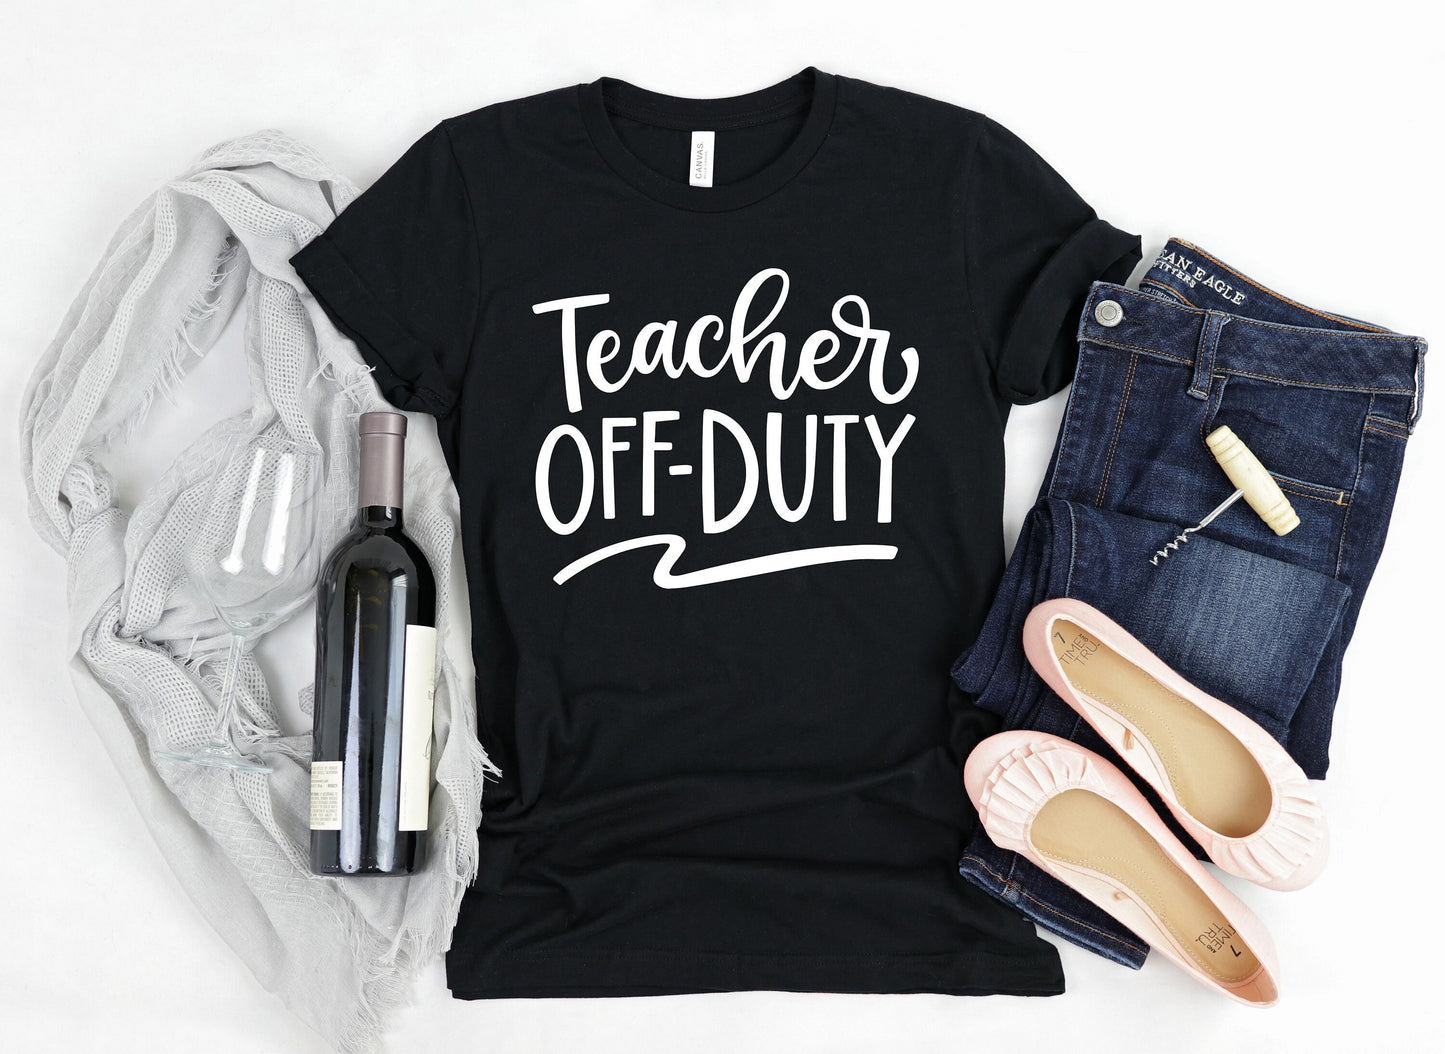 Teacher Off Duty T-Shirt - Summer Vacation Shirt - Gift for Teacher - Teacher Appreciation Shirt